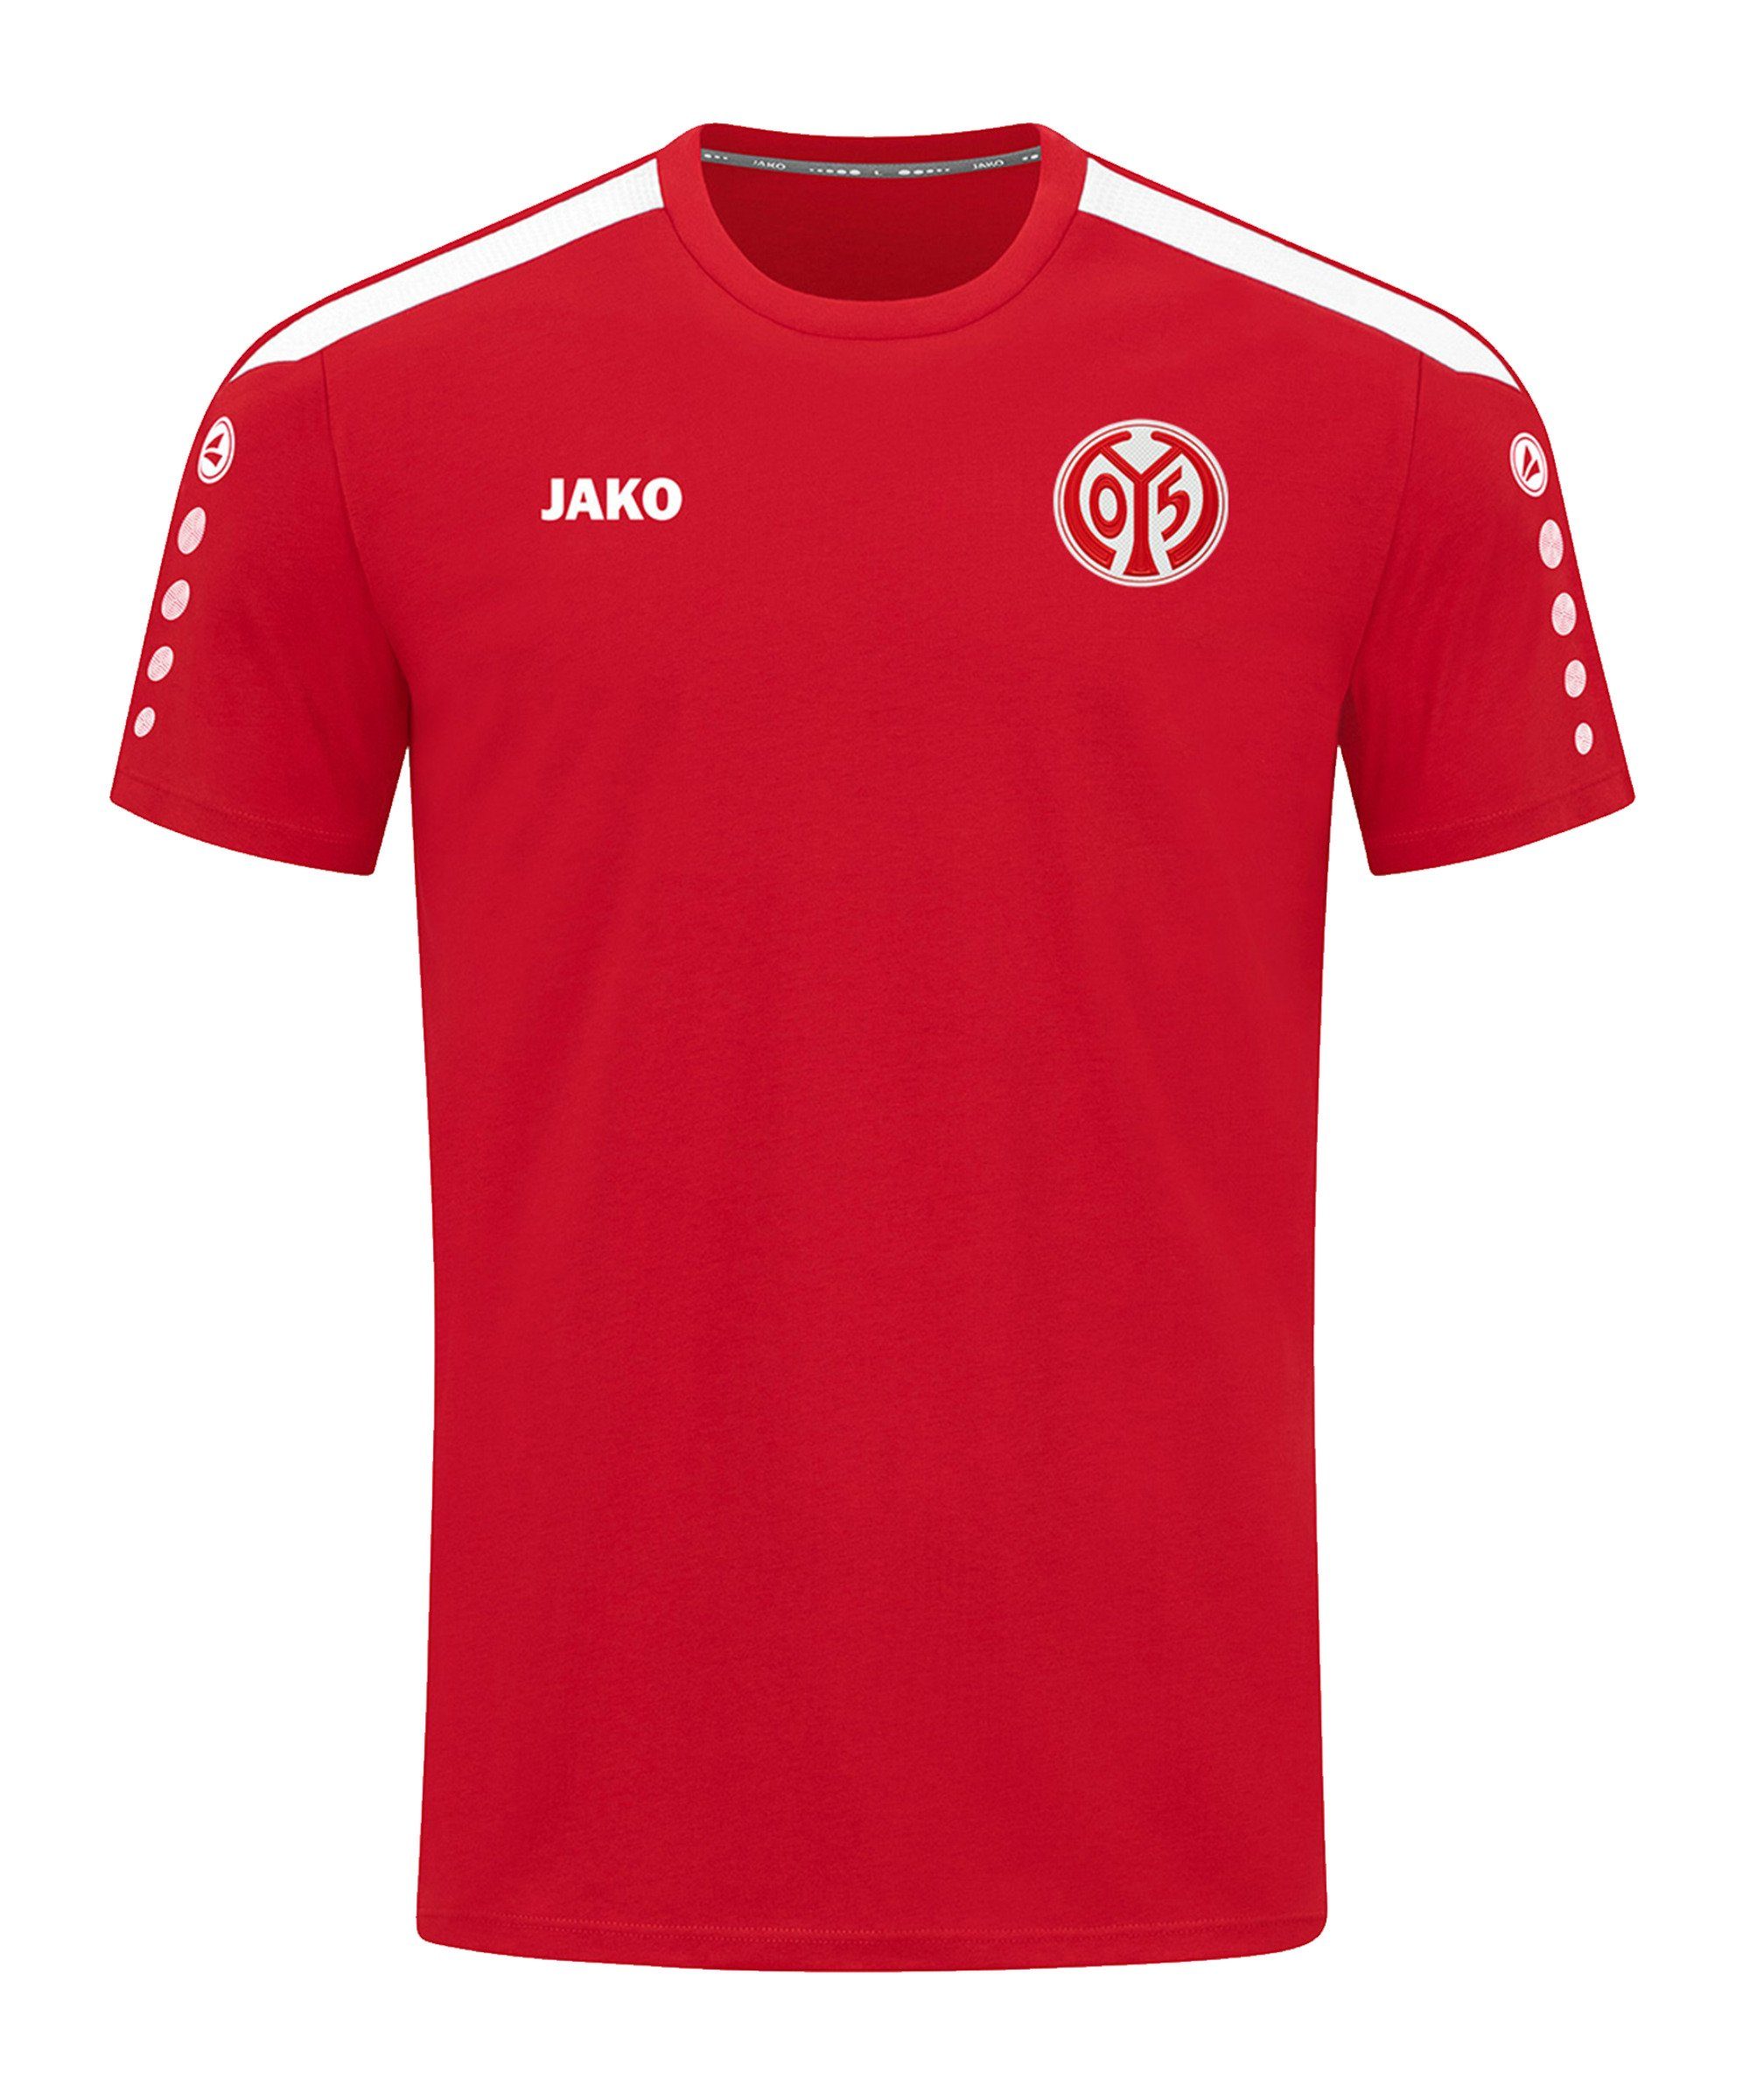 Jako T-Shirt 1. FSV Mainz T-Shirt rot 05 default Power